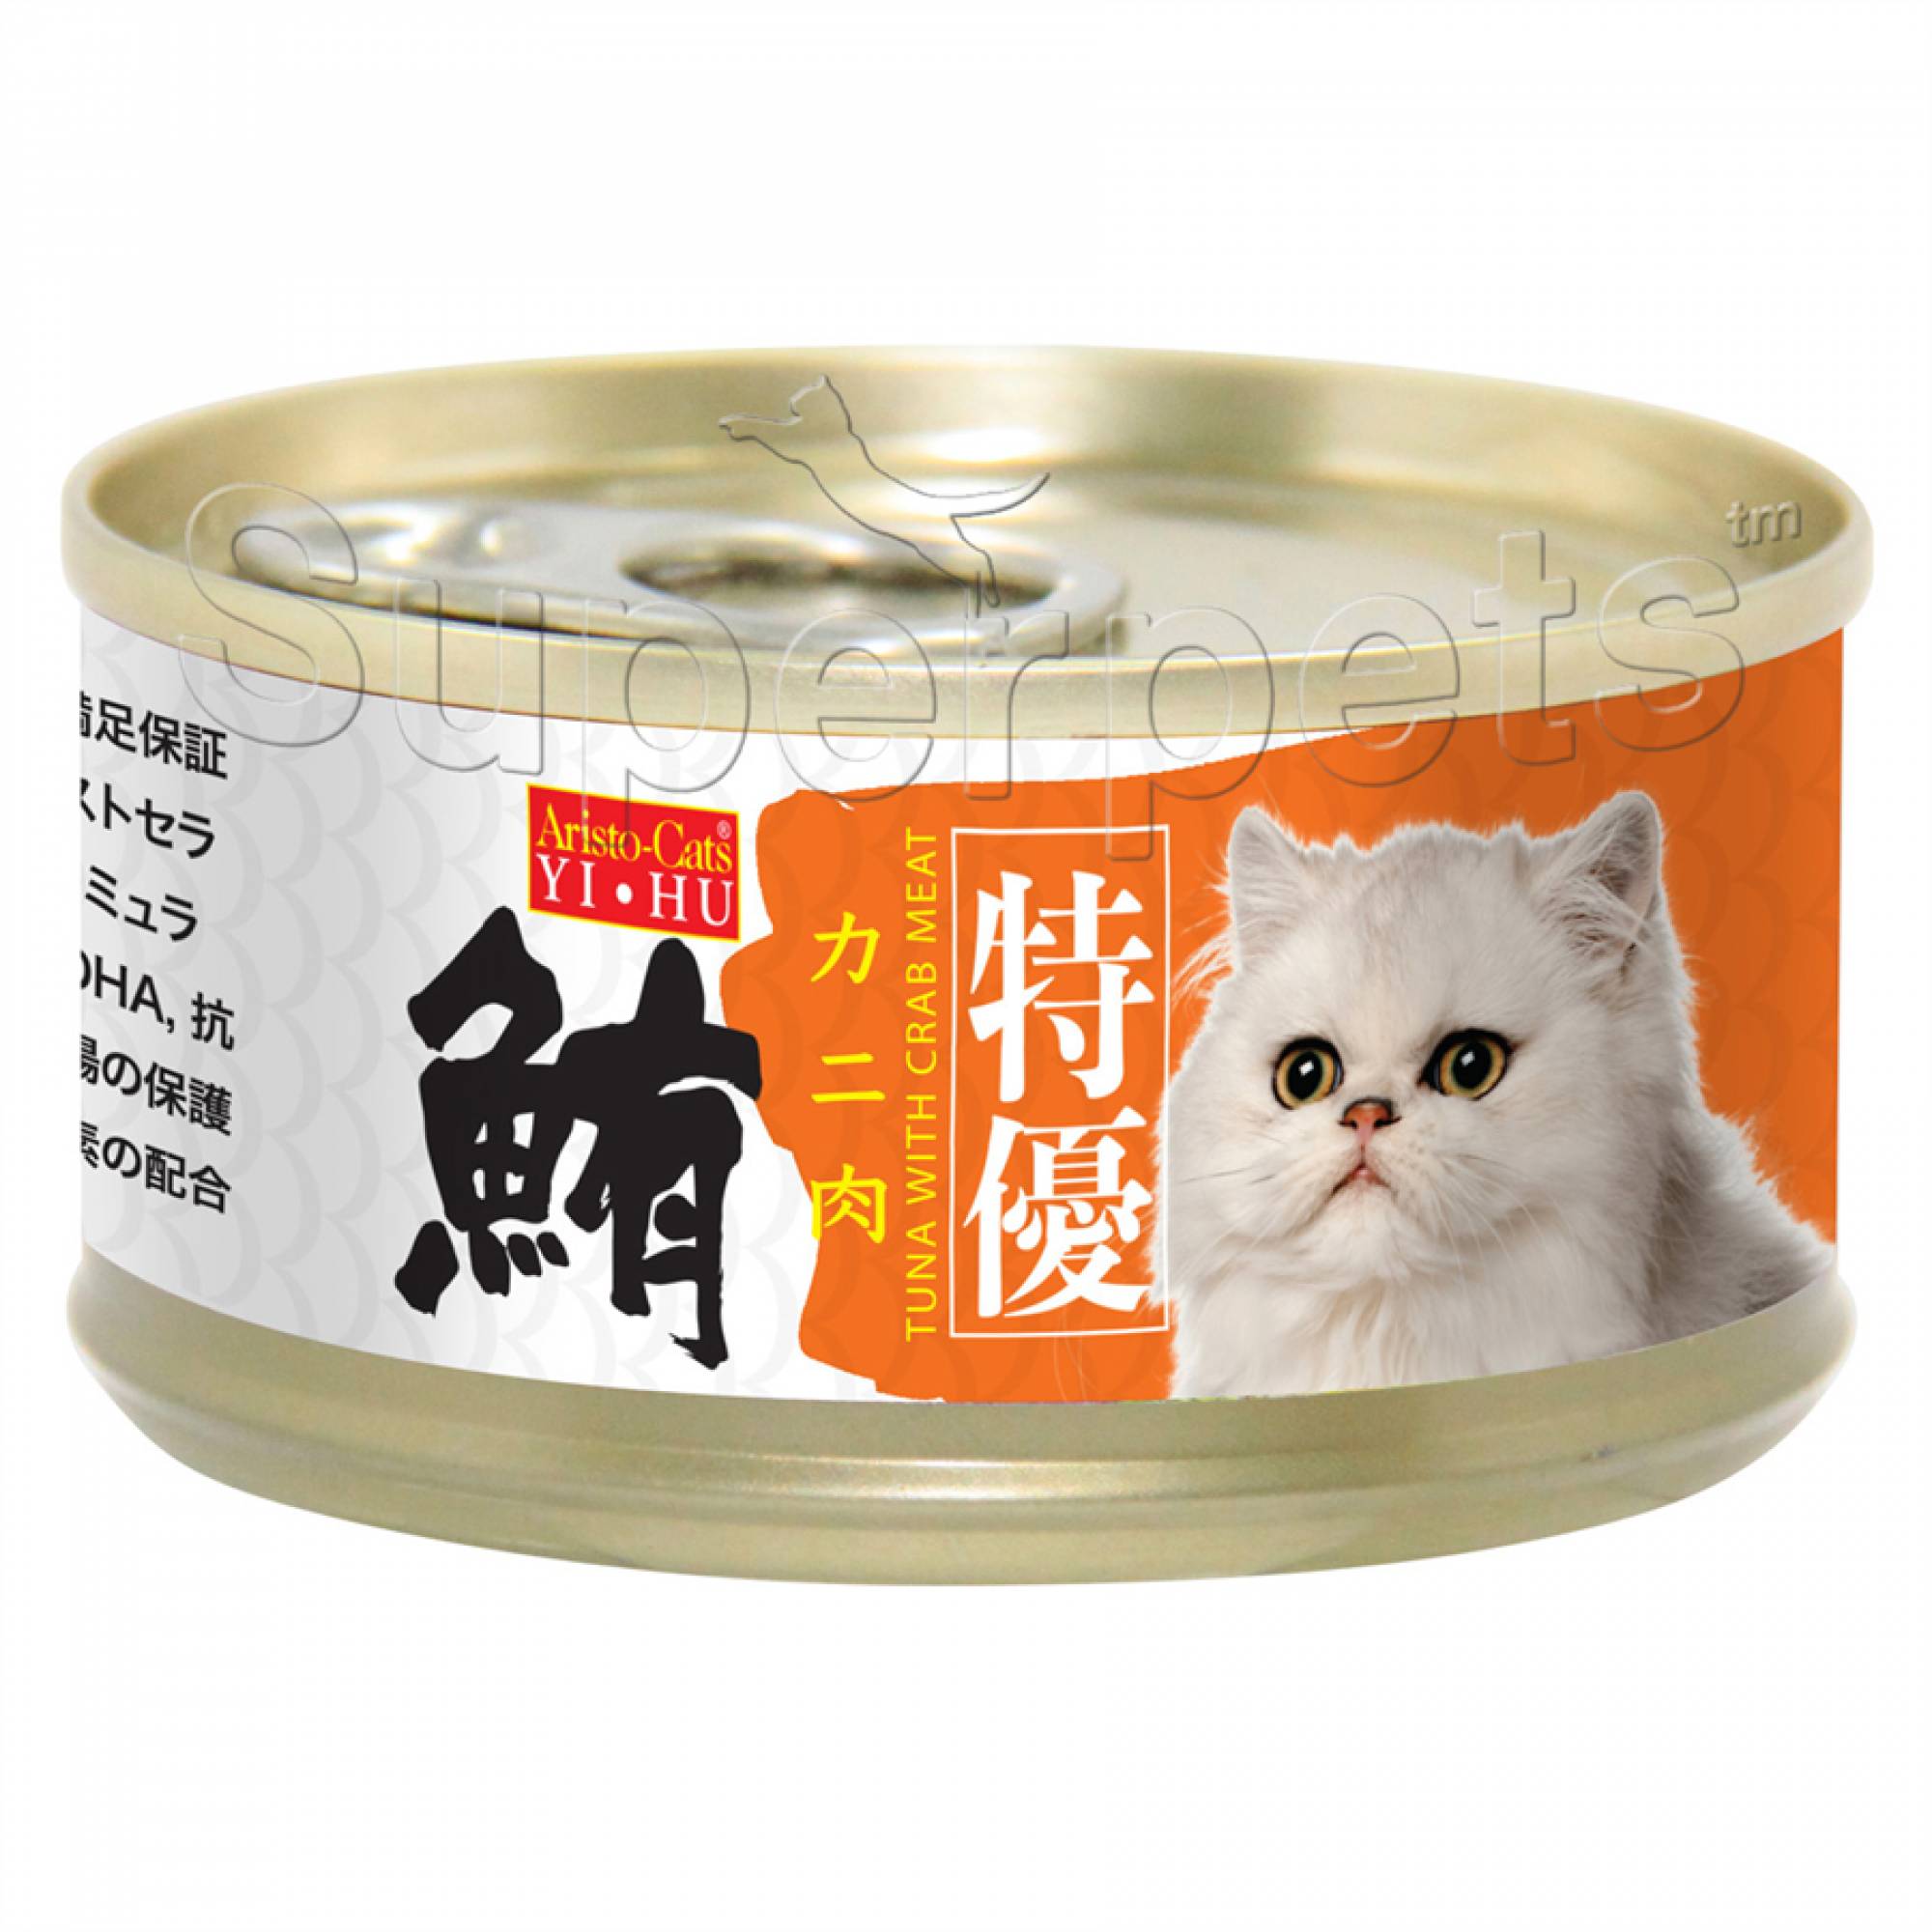 Aristo-Cats - Premium Plus (Export) - Tuna with Crab Meat 80g